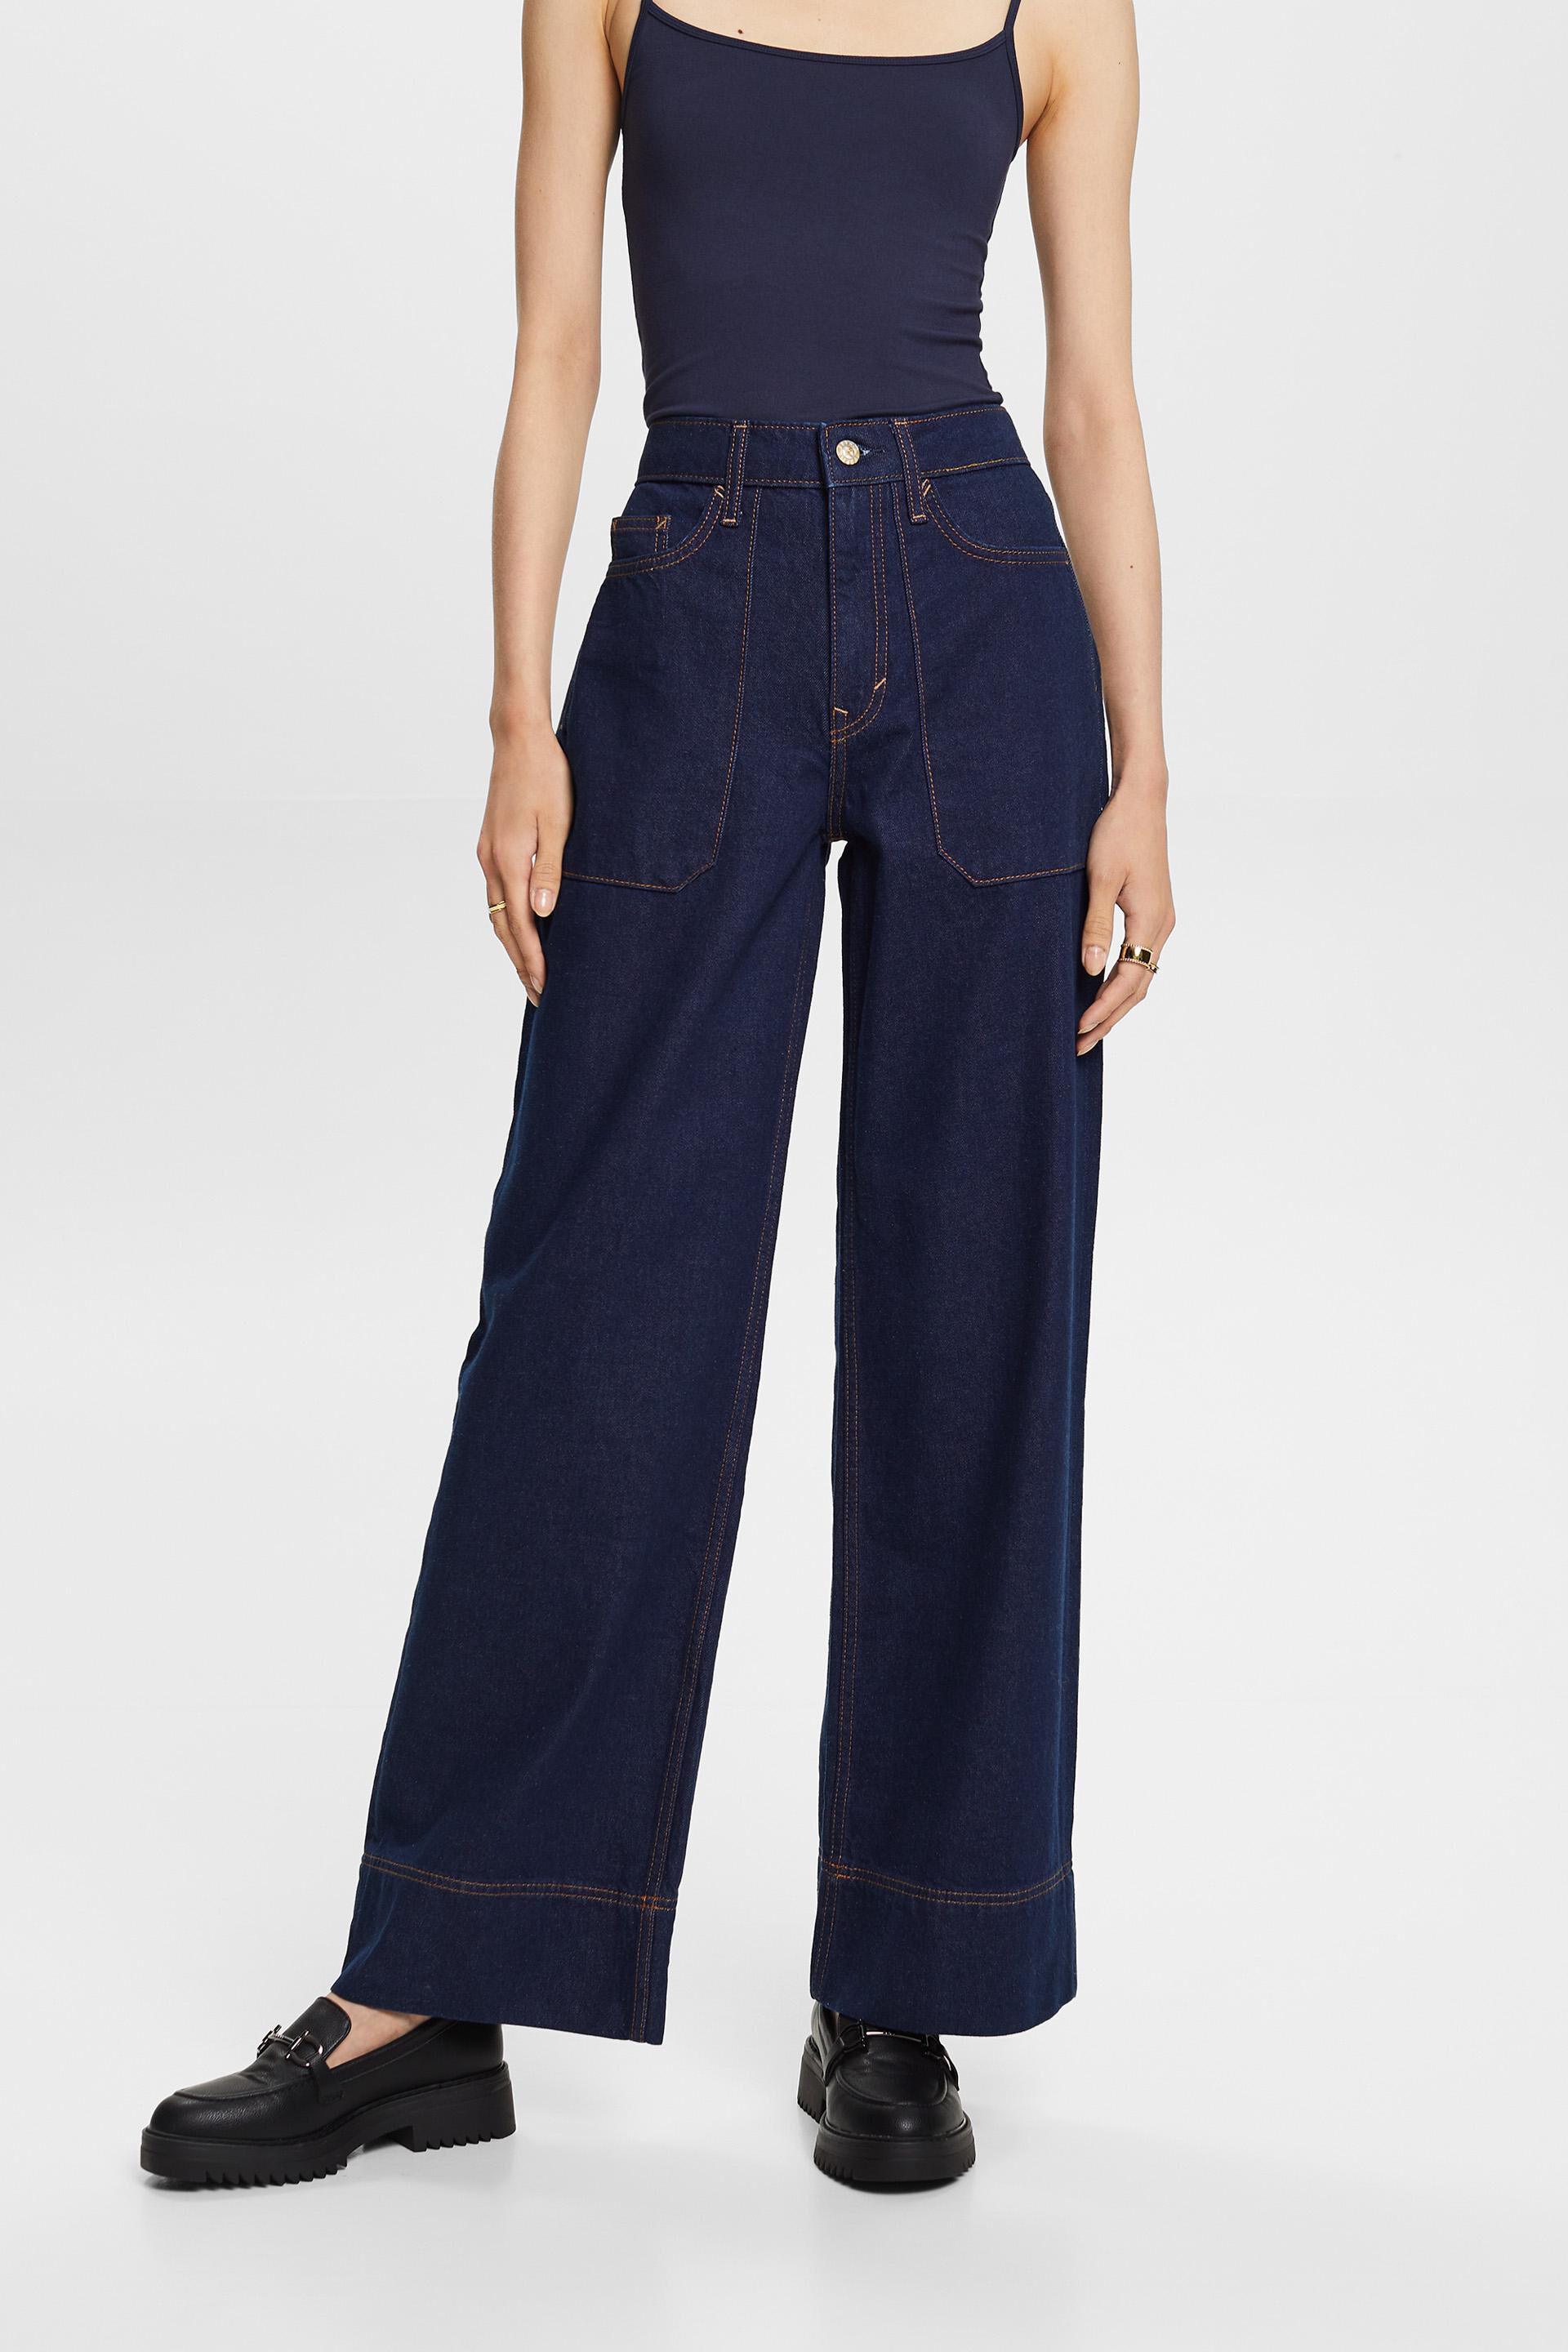 Esprit jeans, wide leg cotton Retro 100%